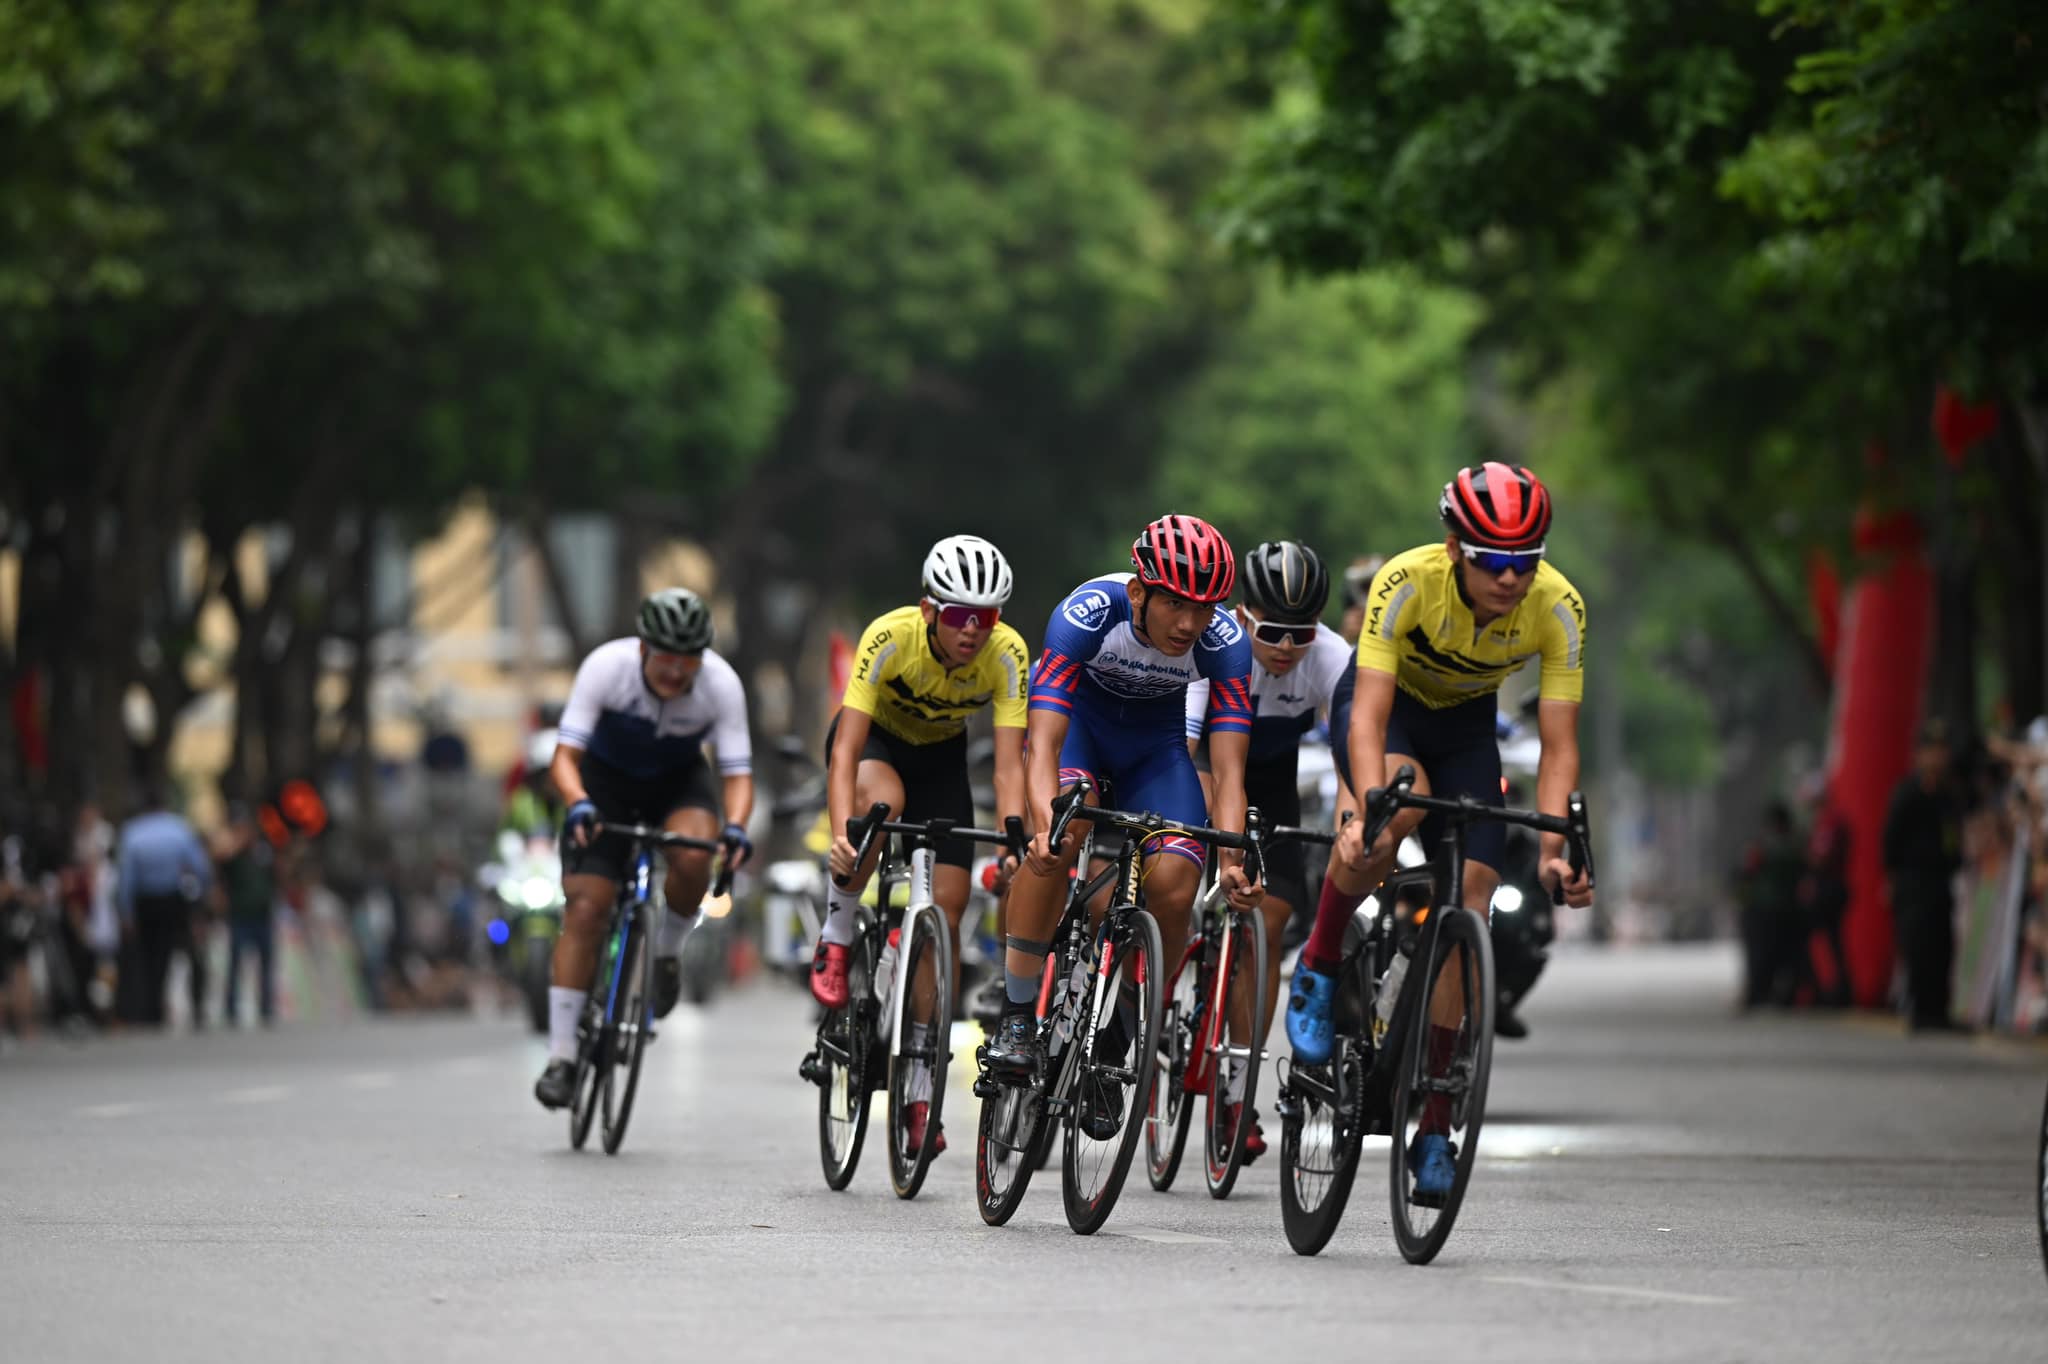 Các tay đua tranh tài vòng 1 - vòng quanh hồ Hoàn Kiếm. Ảnh: Cycling News